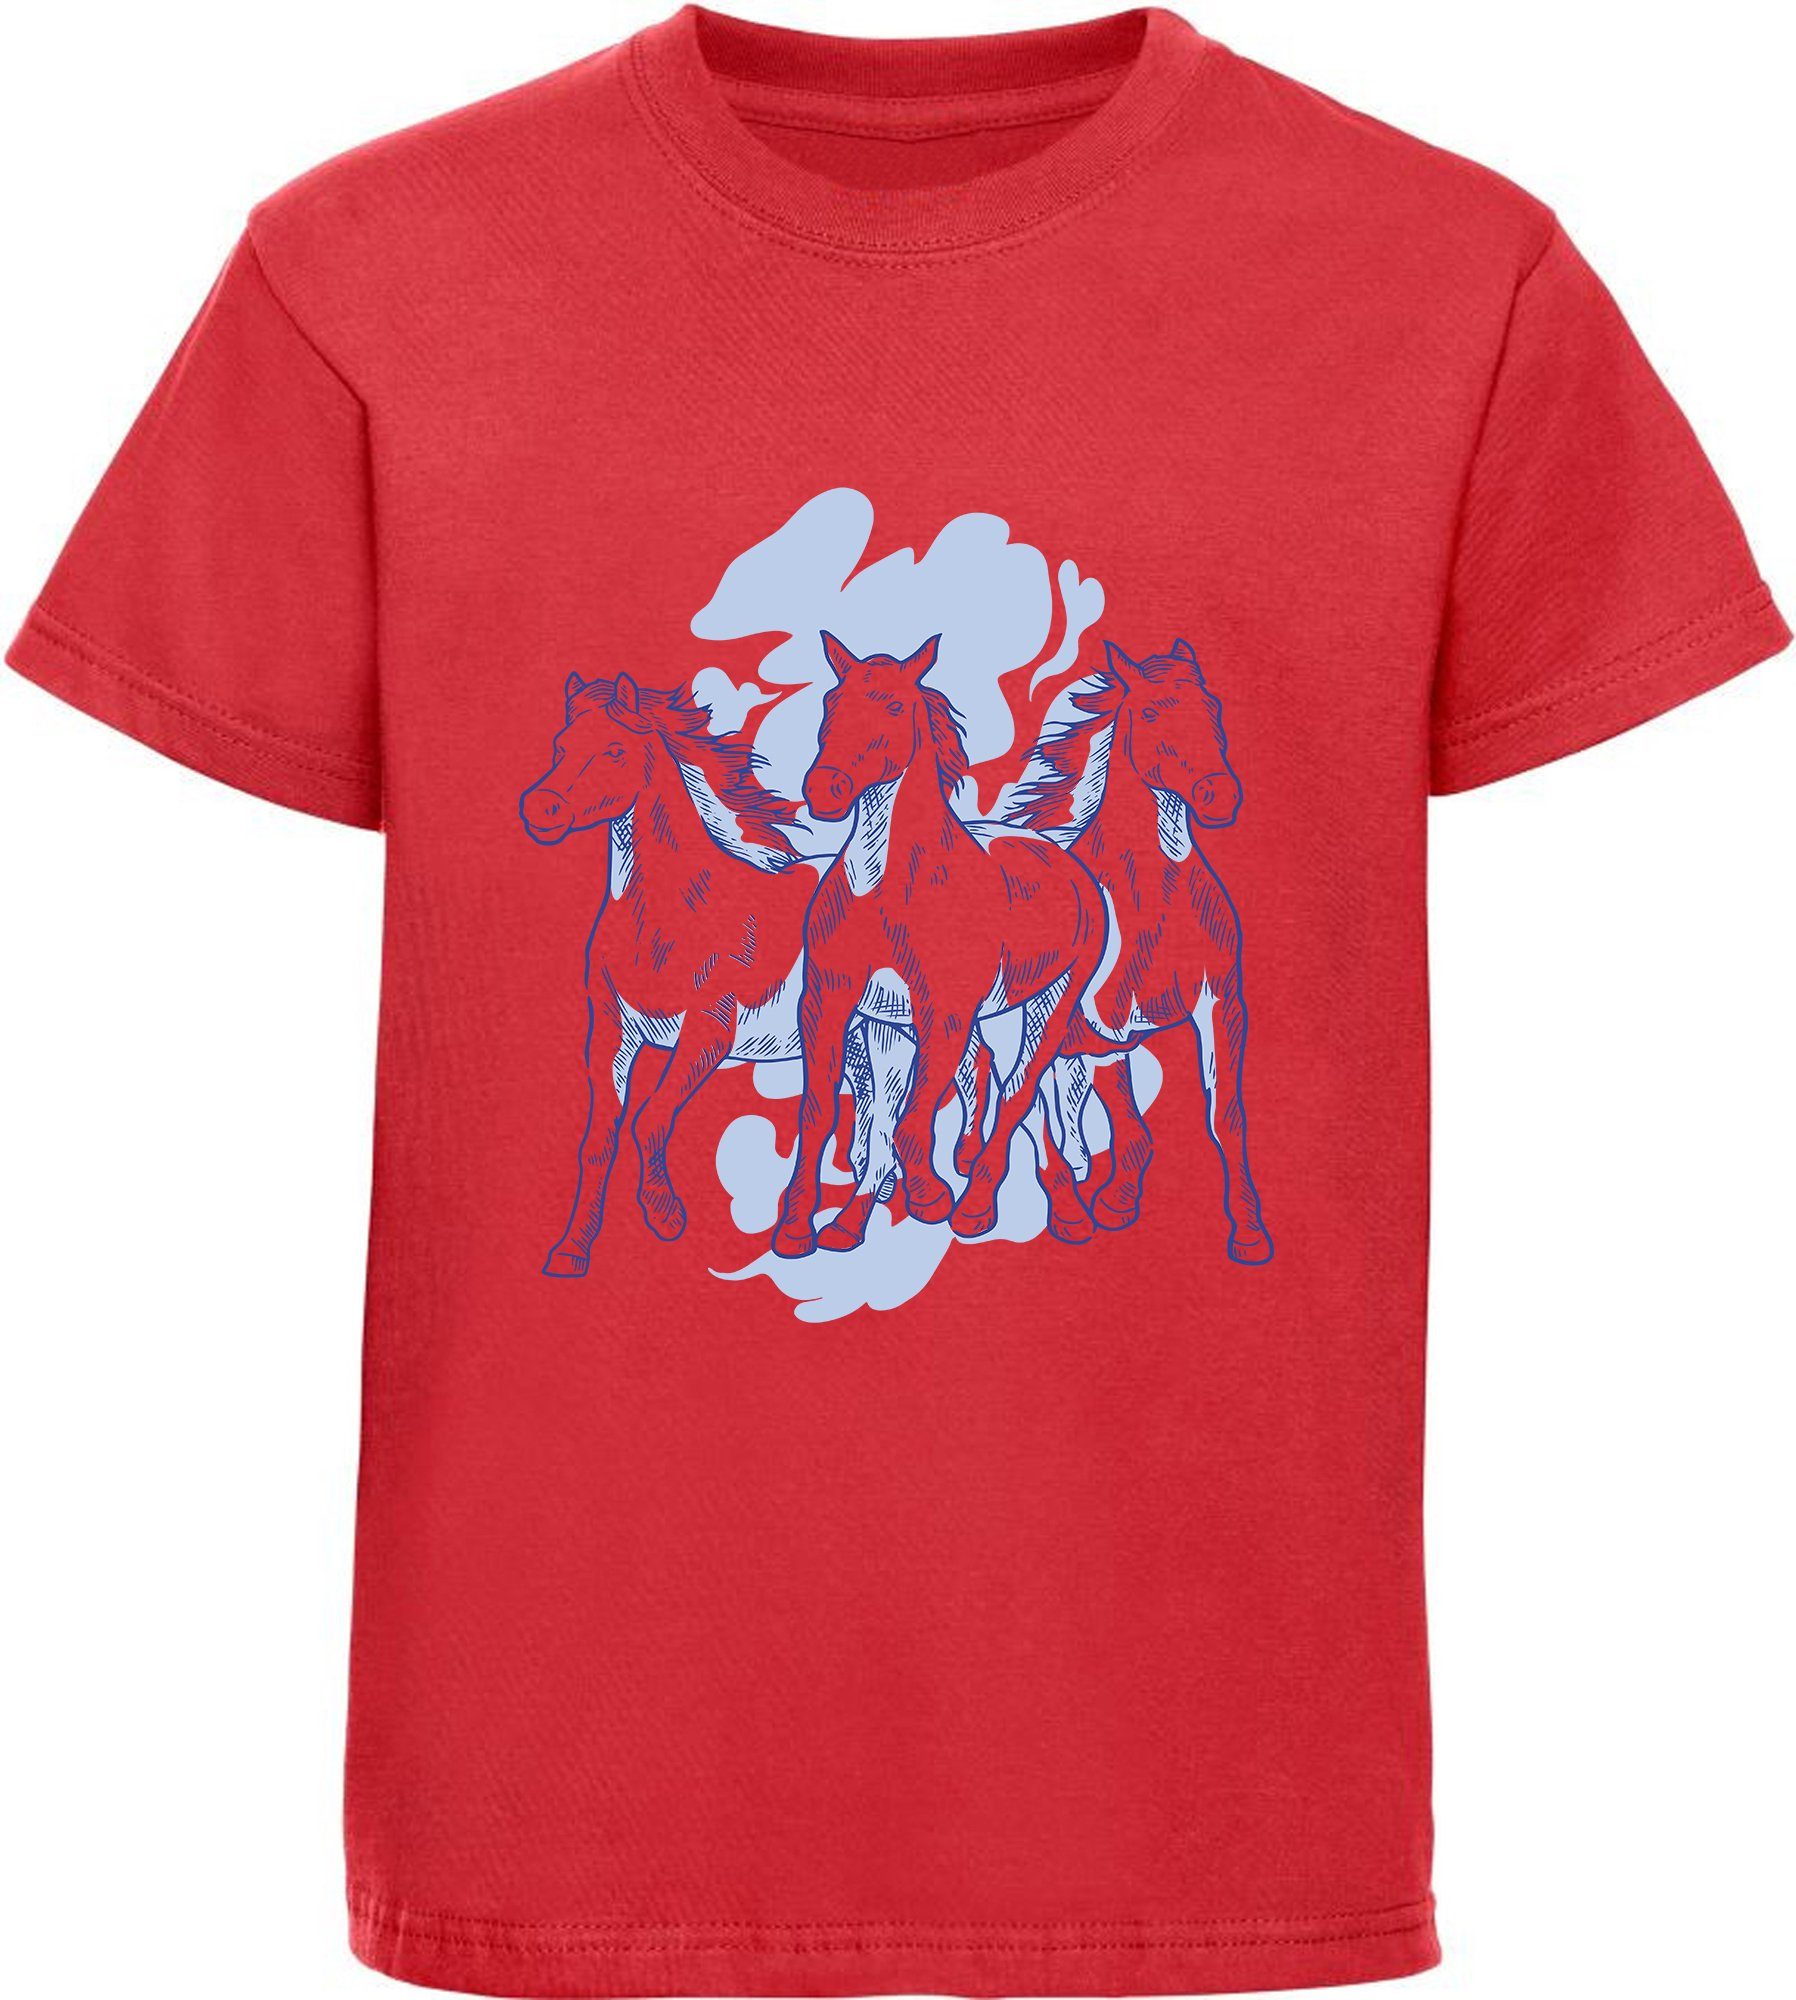 MyDesign24 Print-Shirt bedrucktes i141 T-Shirt Mädchen Aufdruck, mit 3 Baumwollshirt mit Pferden rot